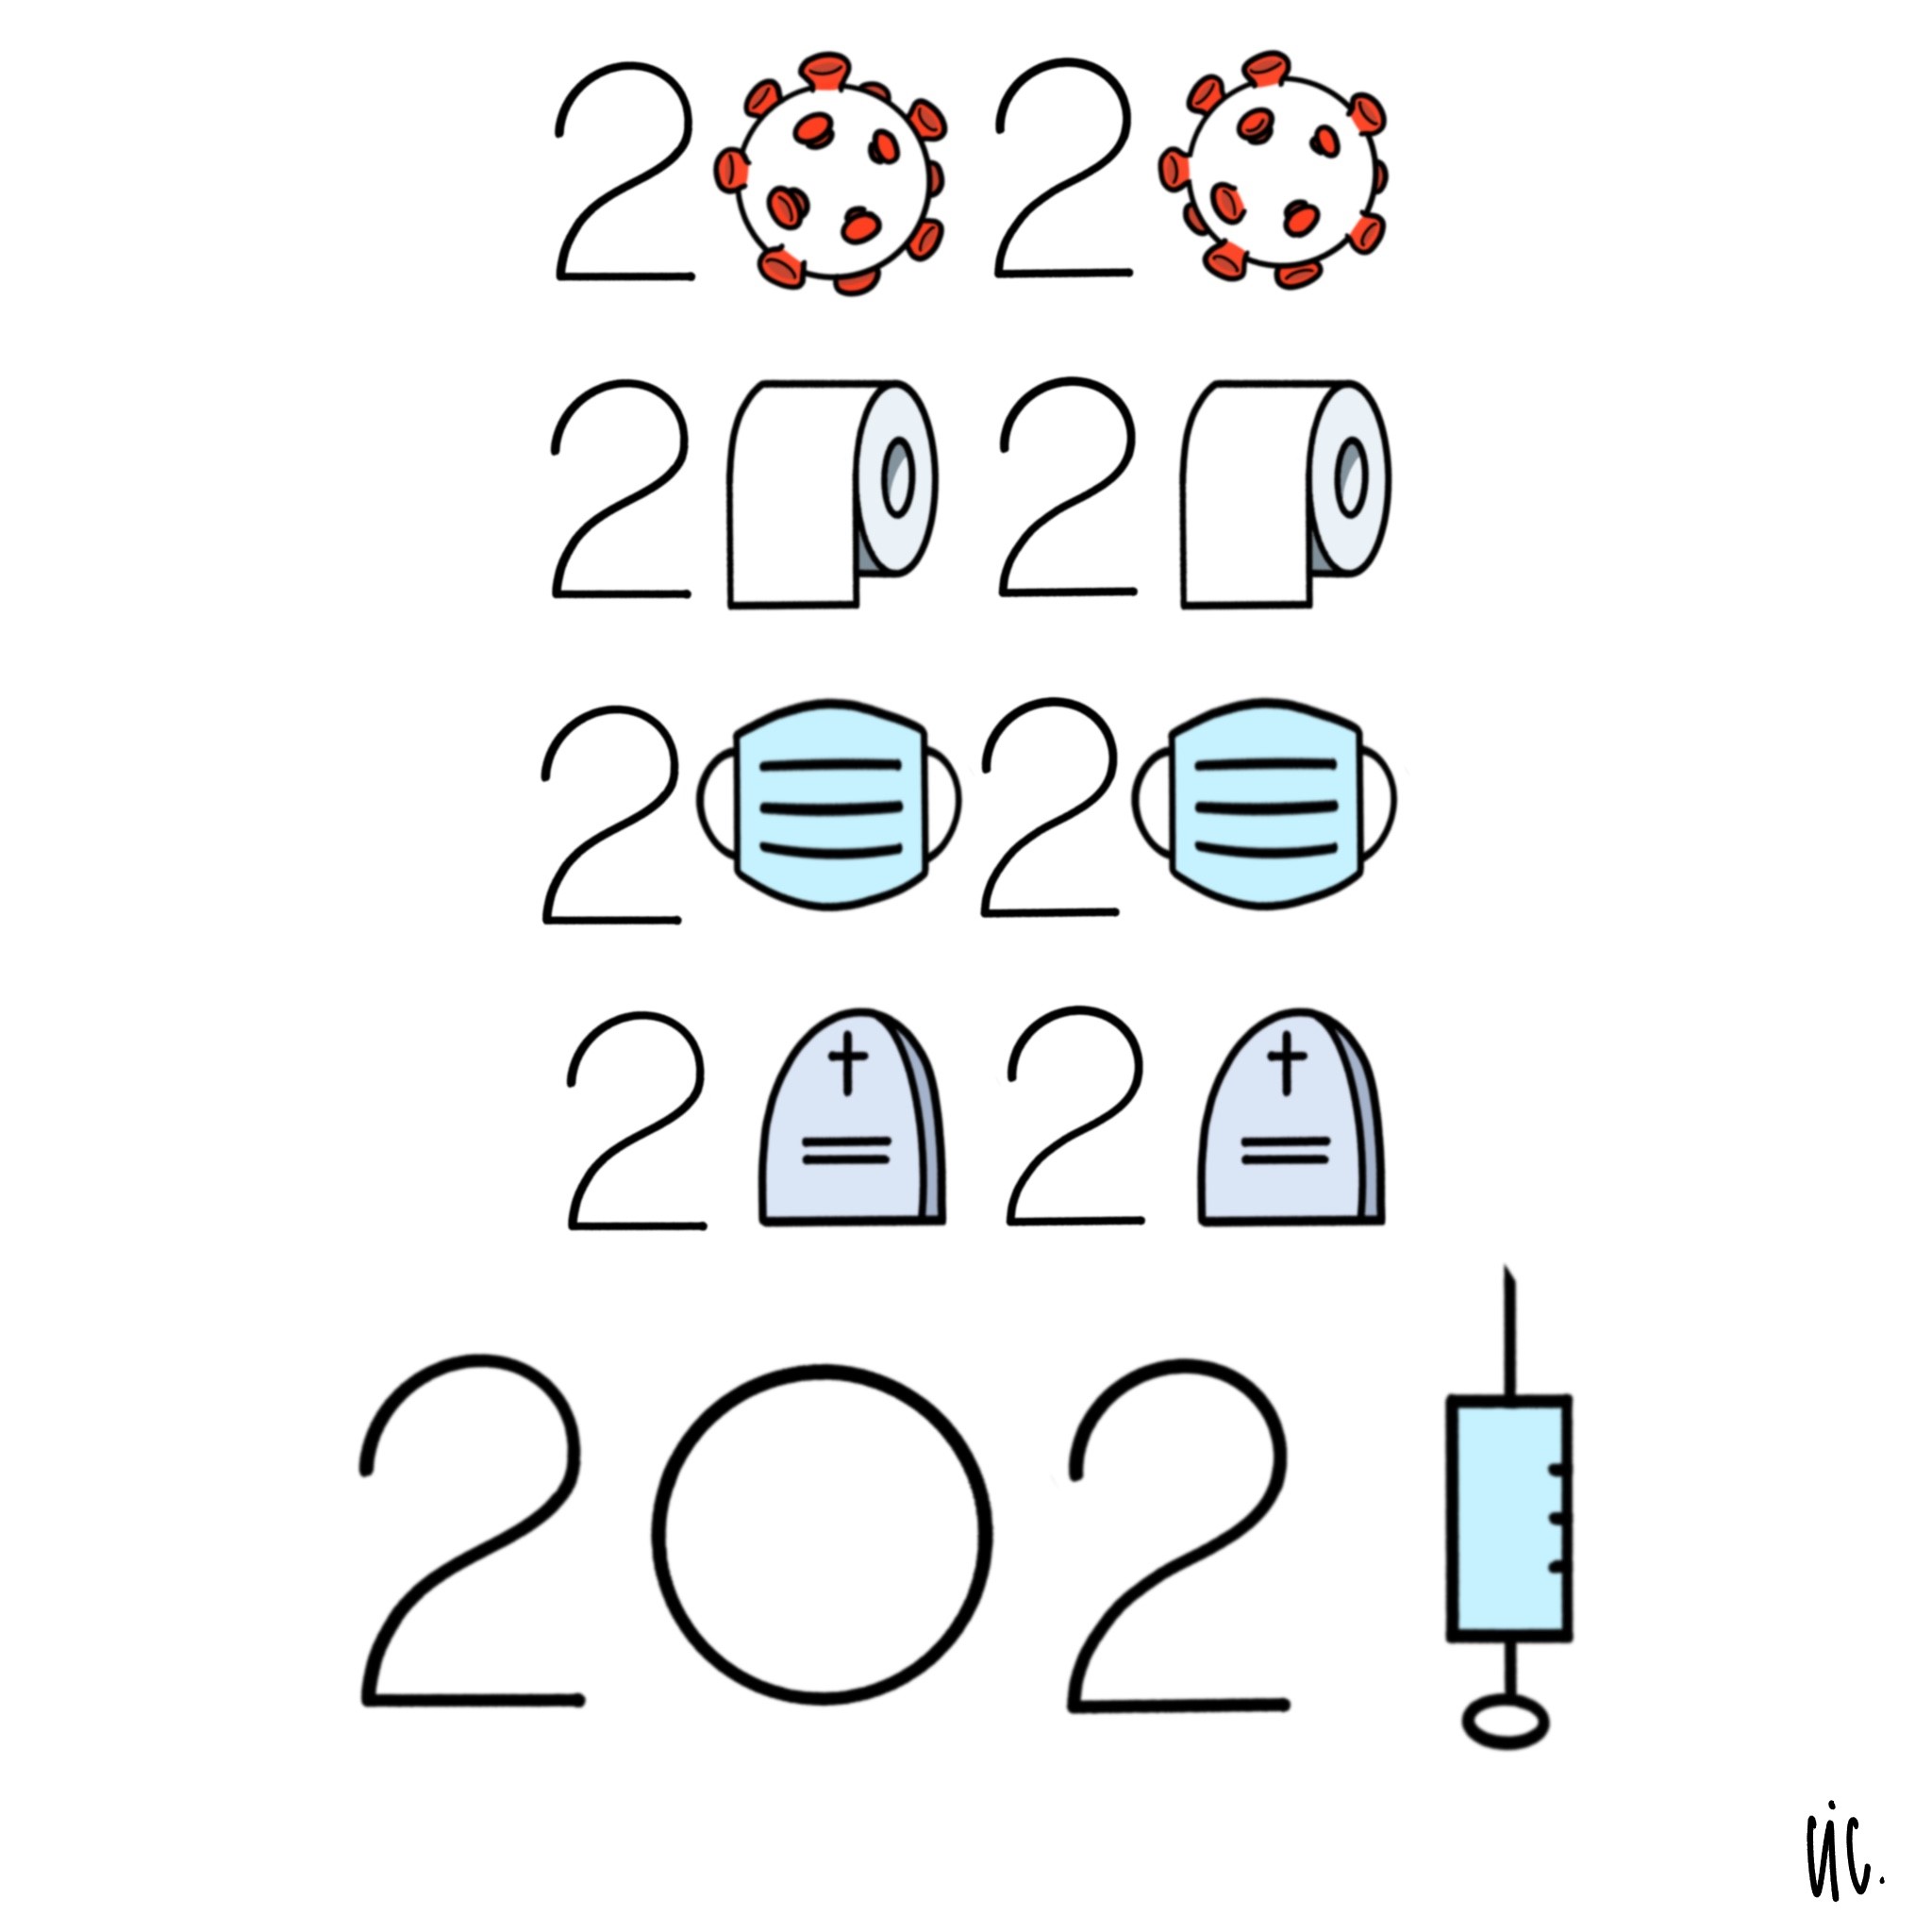 Años 2020, 2021 caricaturizados